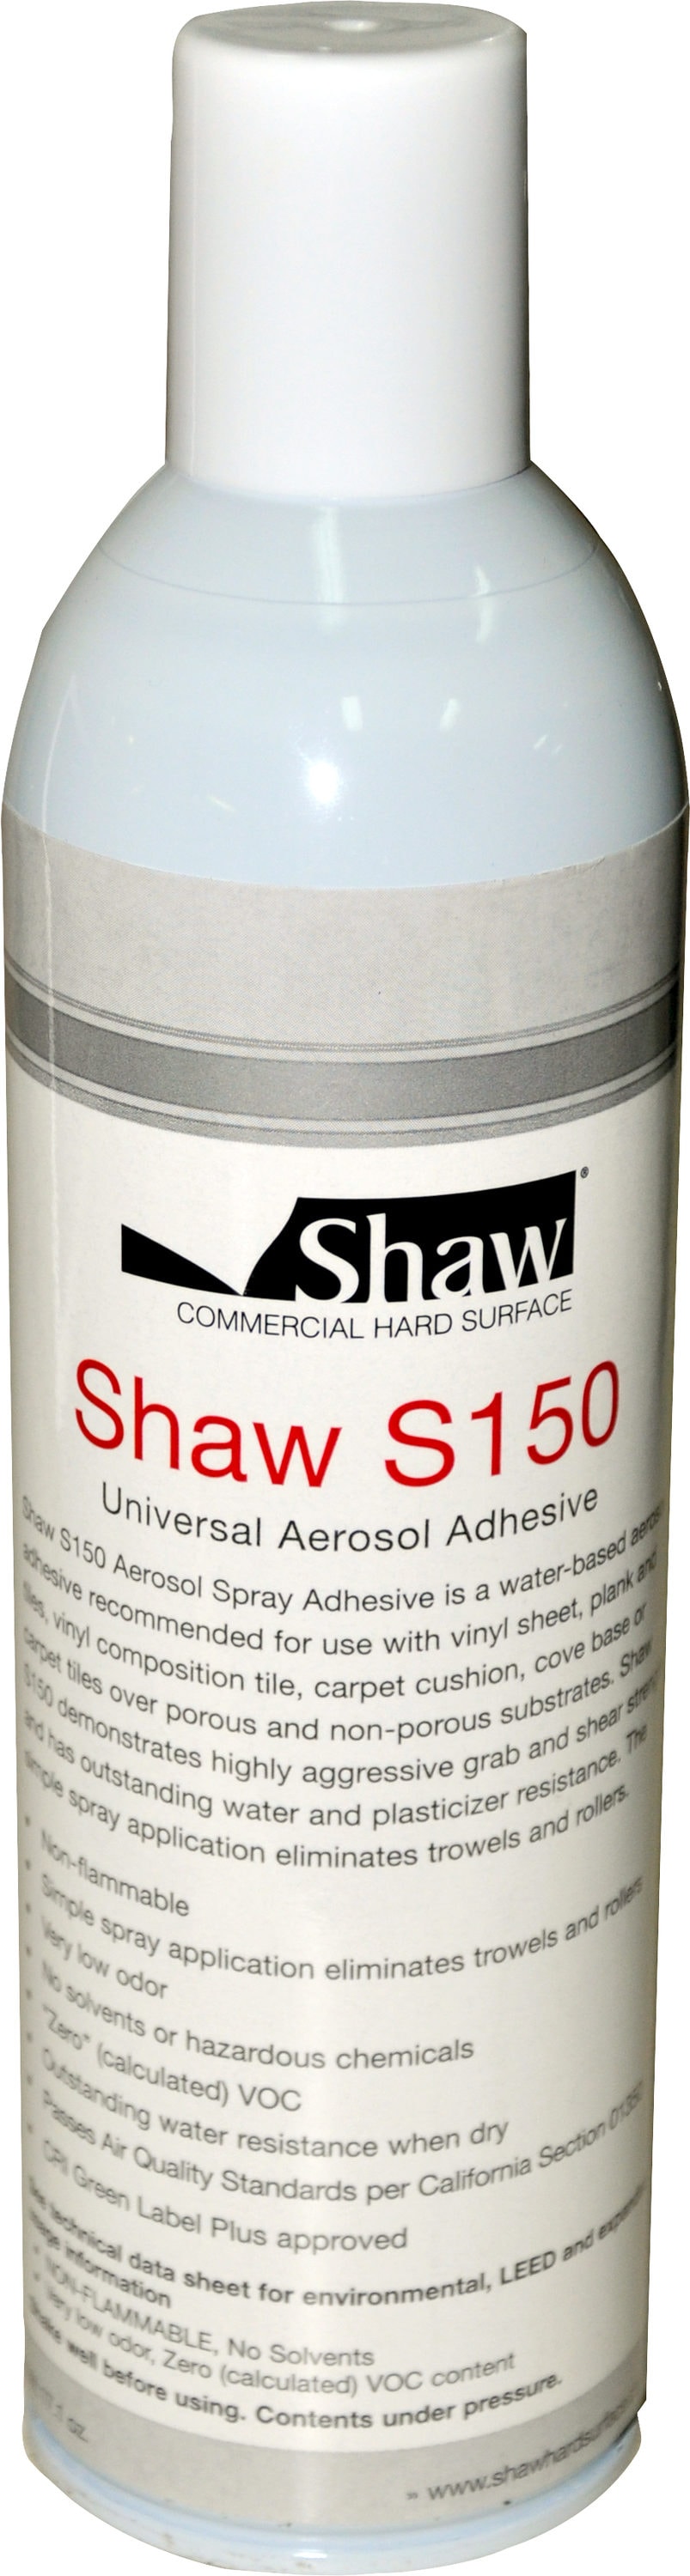 Buy Shaw D1000 Carpet Adhesive at Georgia Carpet for Low Price